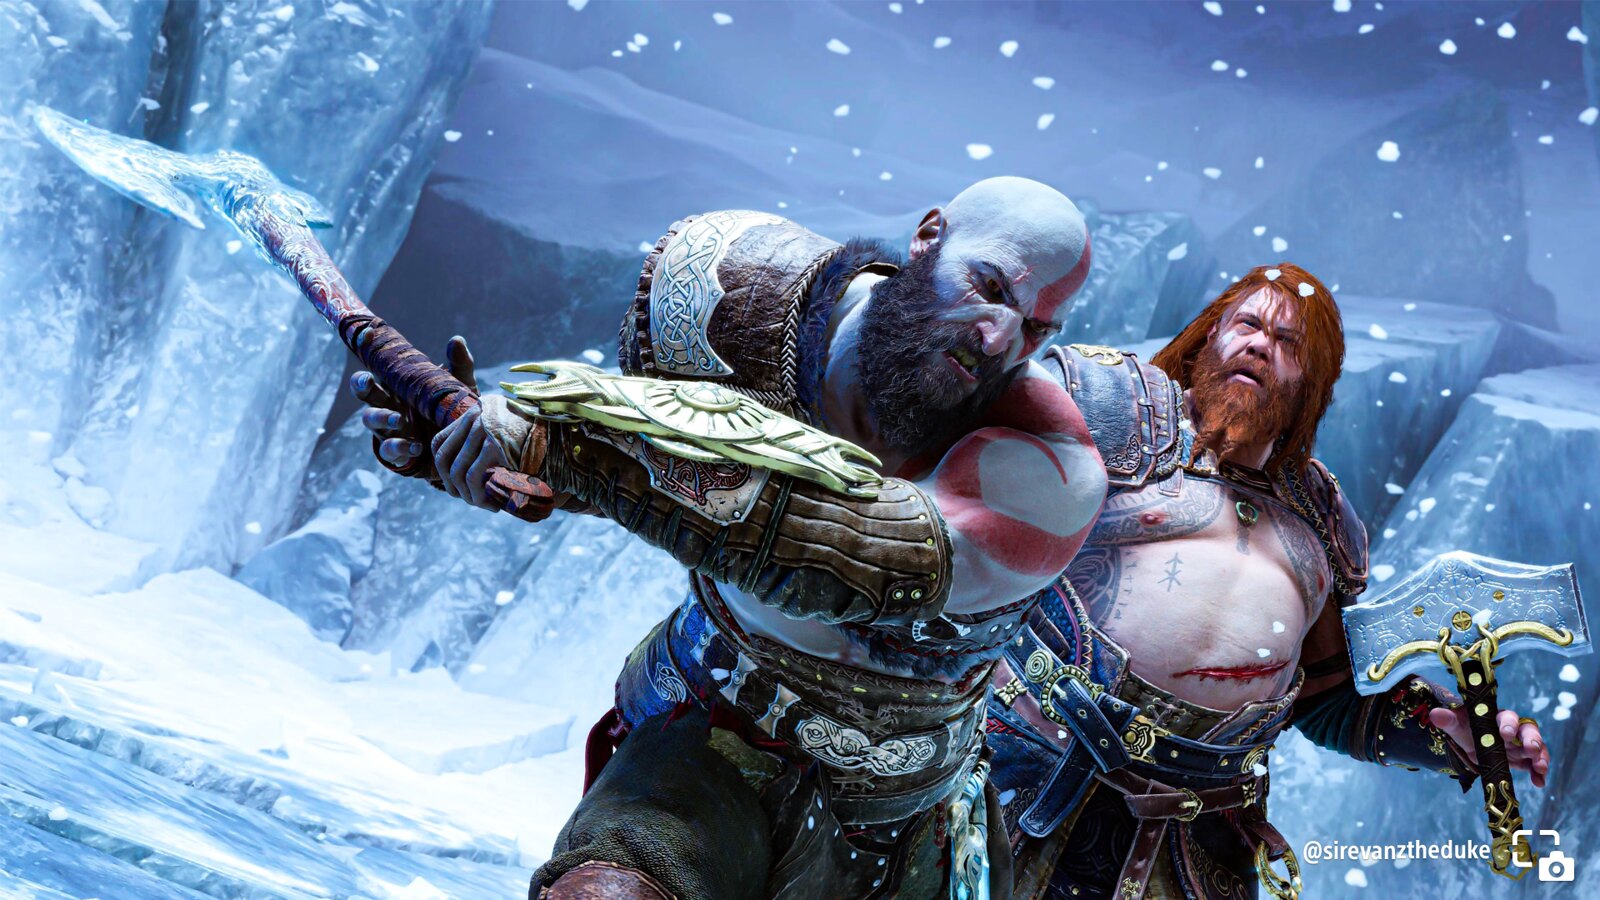 Kratos brutale, location favolose e scatti colorati: il blog di PlayStation ha pubblicato le migliori foto scattate dai giocatori in God of War Ragnarok-4